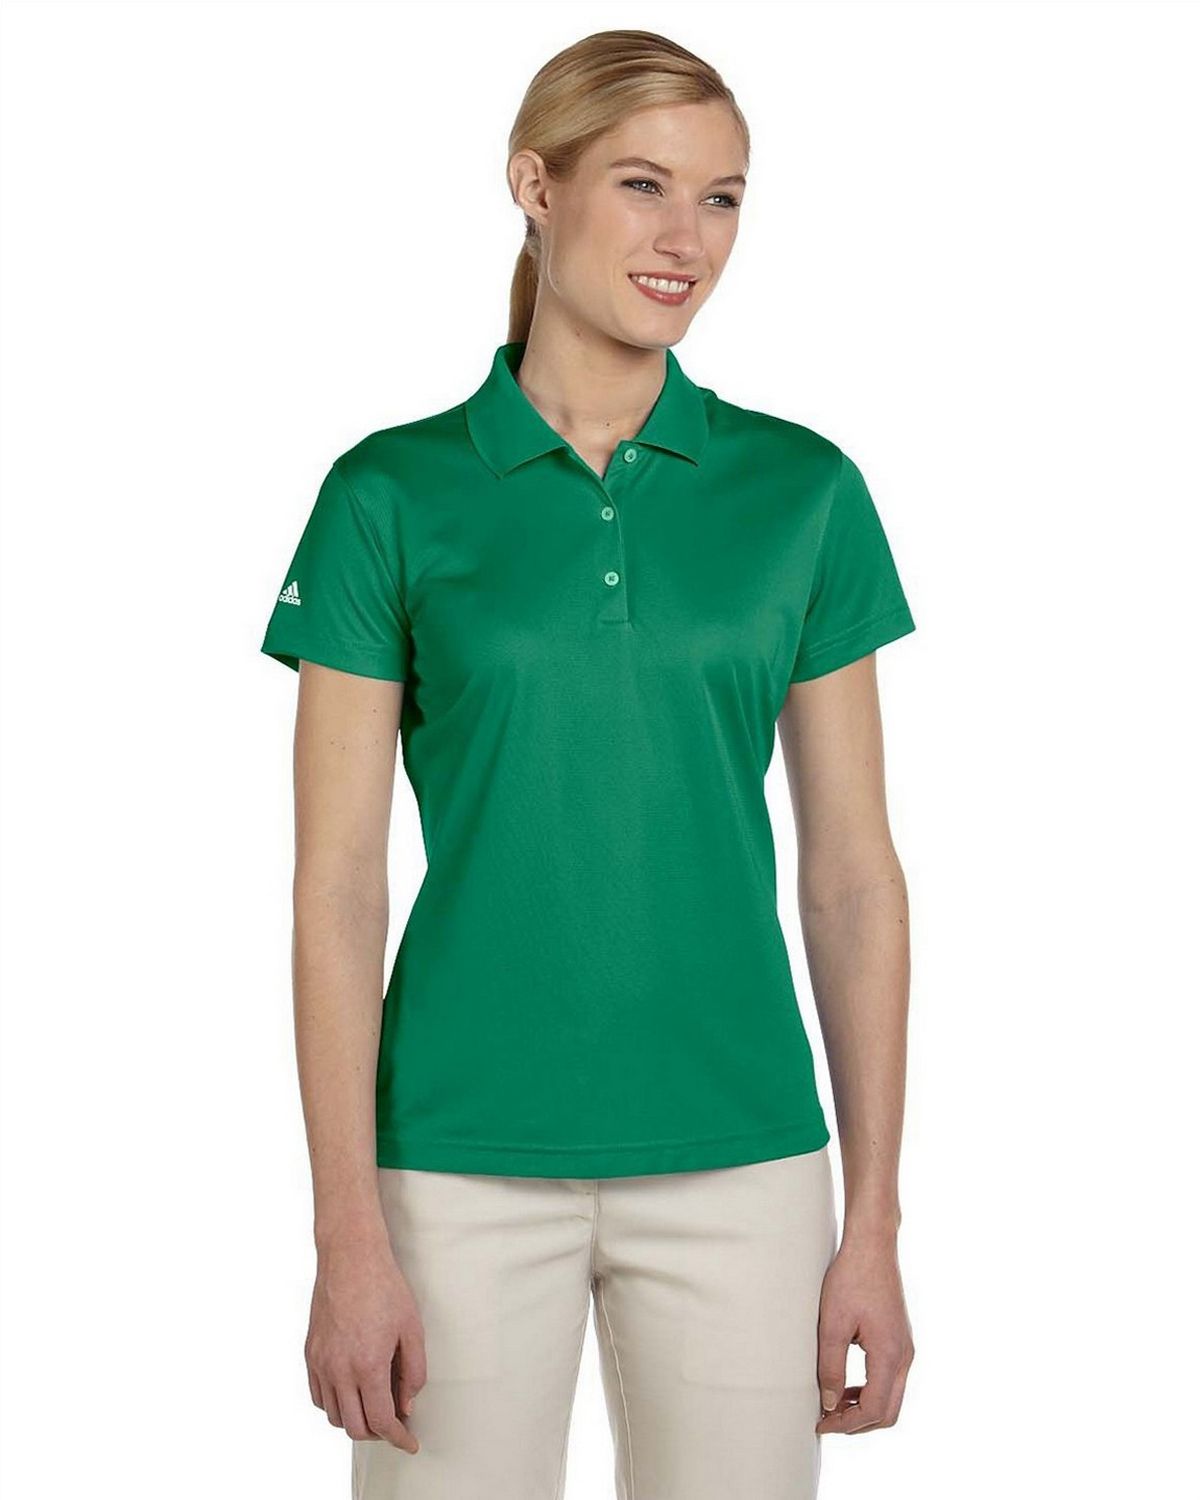 Adidas Golf A131 Women's ClimaLite Pique Short-Sleeve Polo